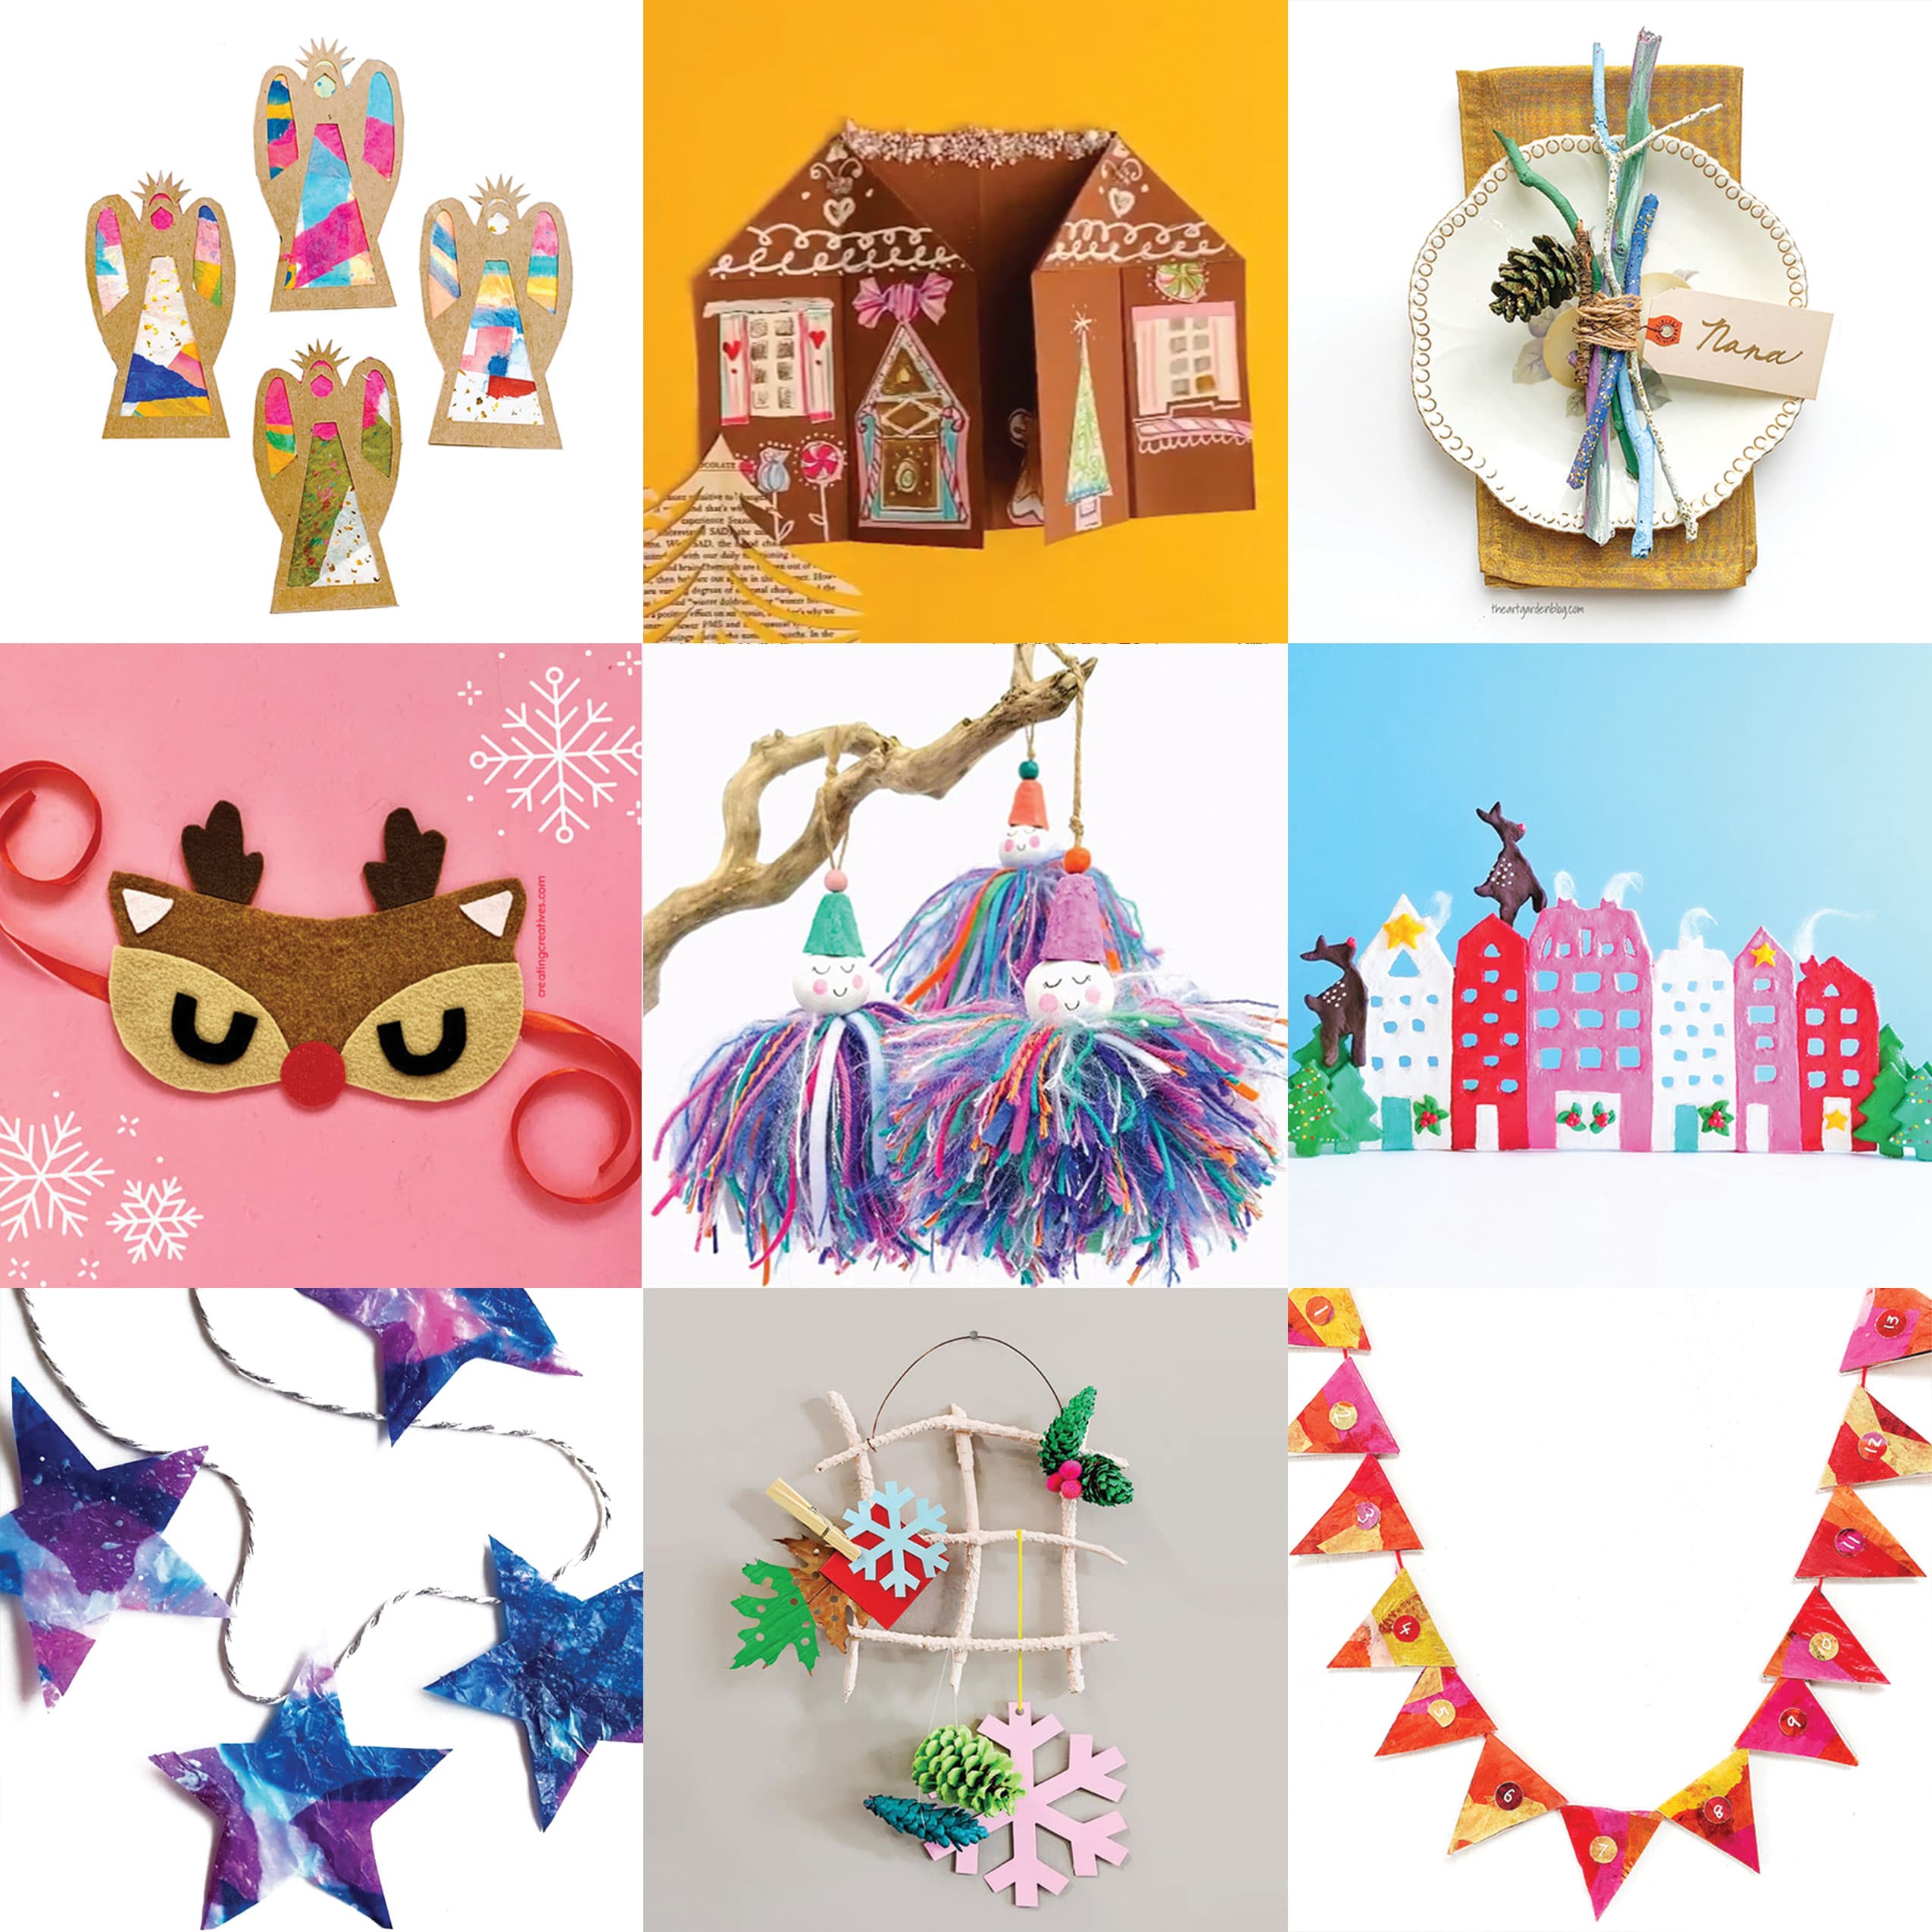 https://barleyandbirch.com/wp-content/uploads/2019/12/bandb-15-Kids-Holiday-Crafts-Everyday-Supplies-FEATURE.jpg